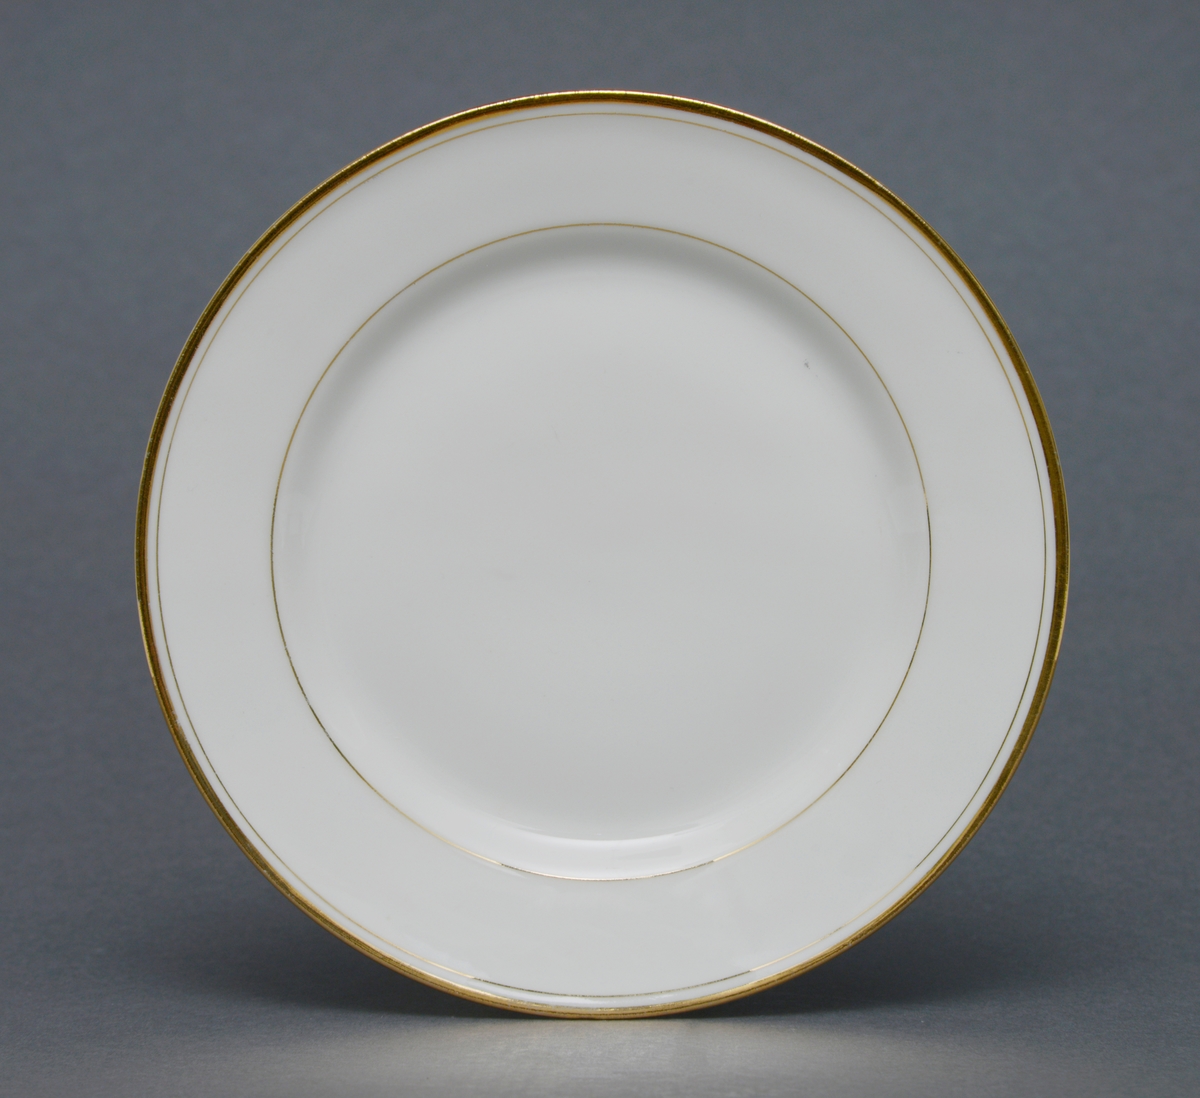 Sirkulær tallerken i porselen med glasur. Dekorert med èn gullforgylt ring rundt kant, og èn mot midten av tallerkenen ved fordypning.